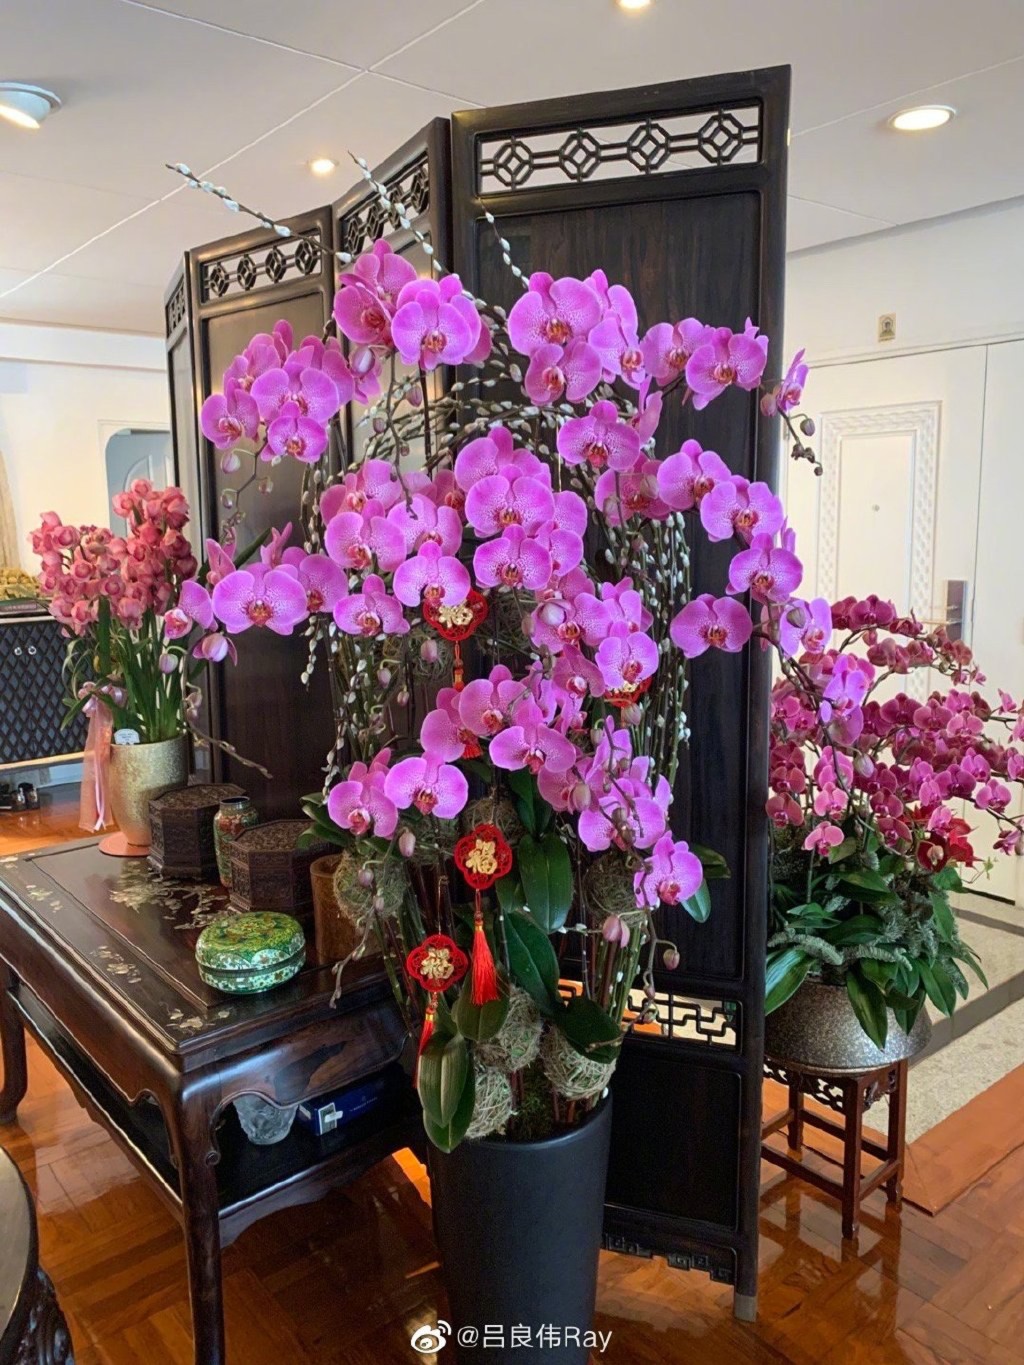 楊小娟在家中擺放了不少花及盆栽。